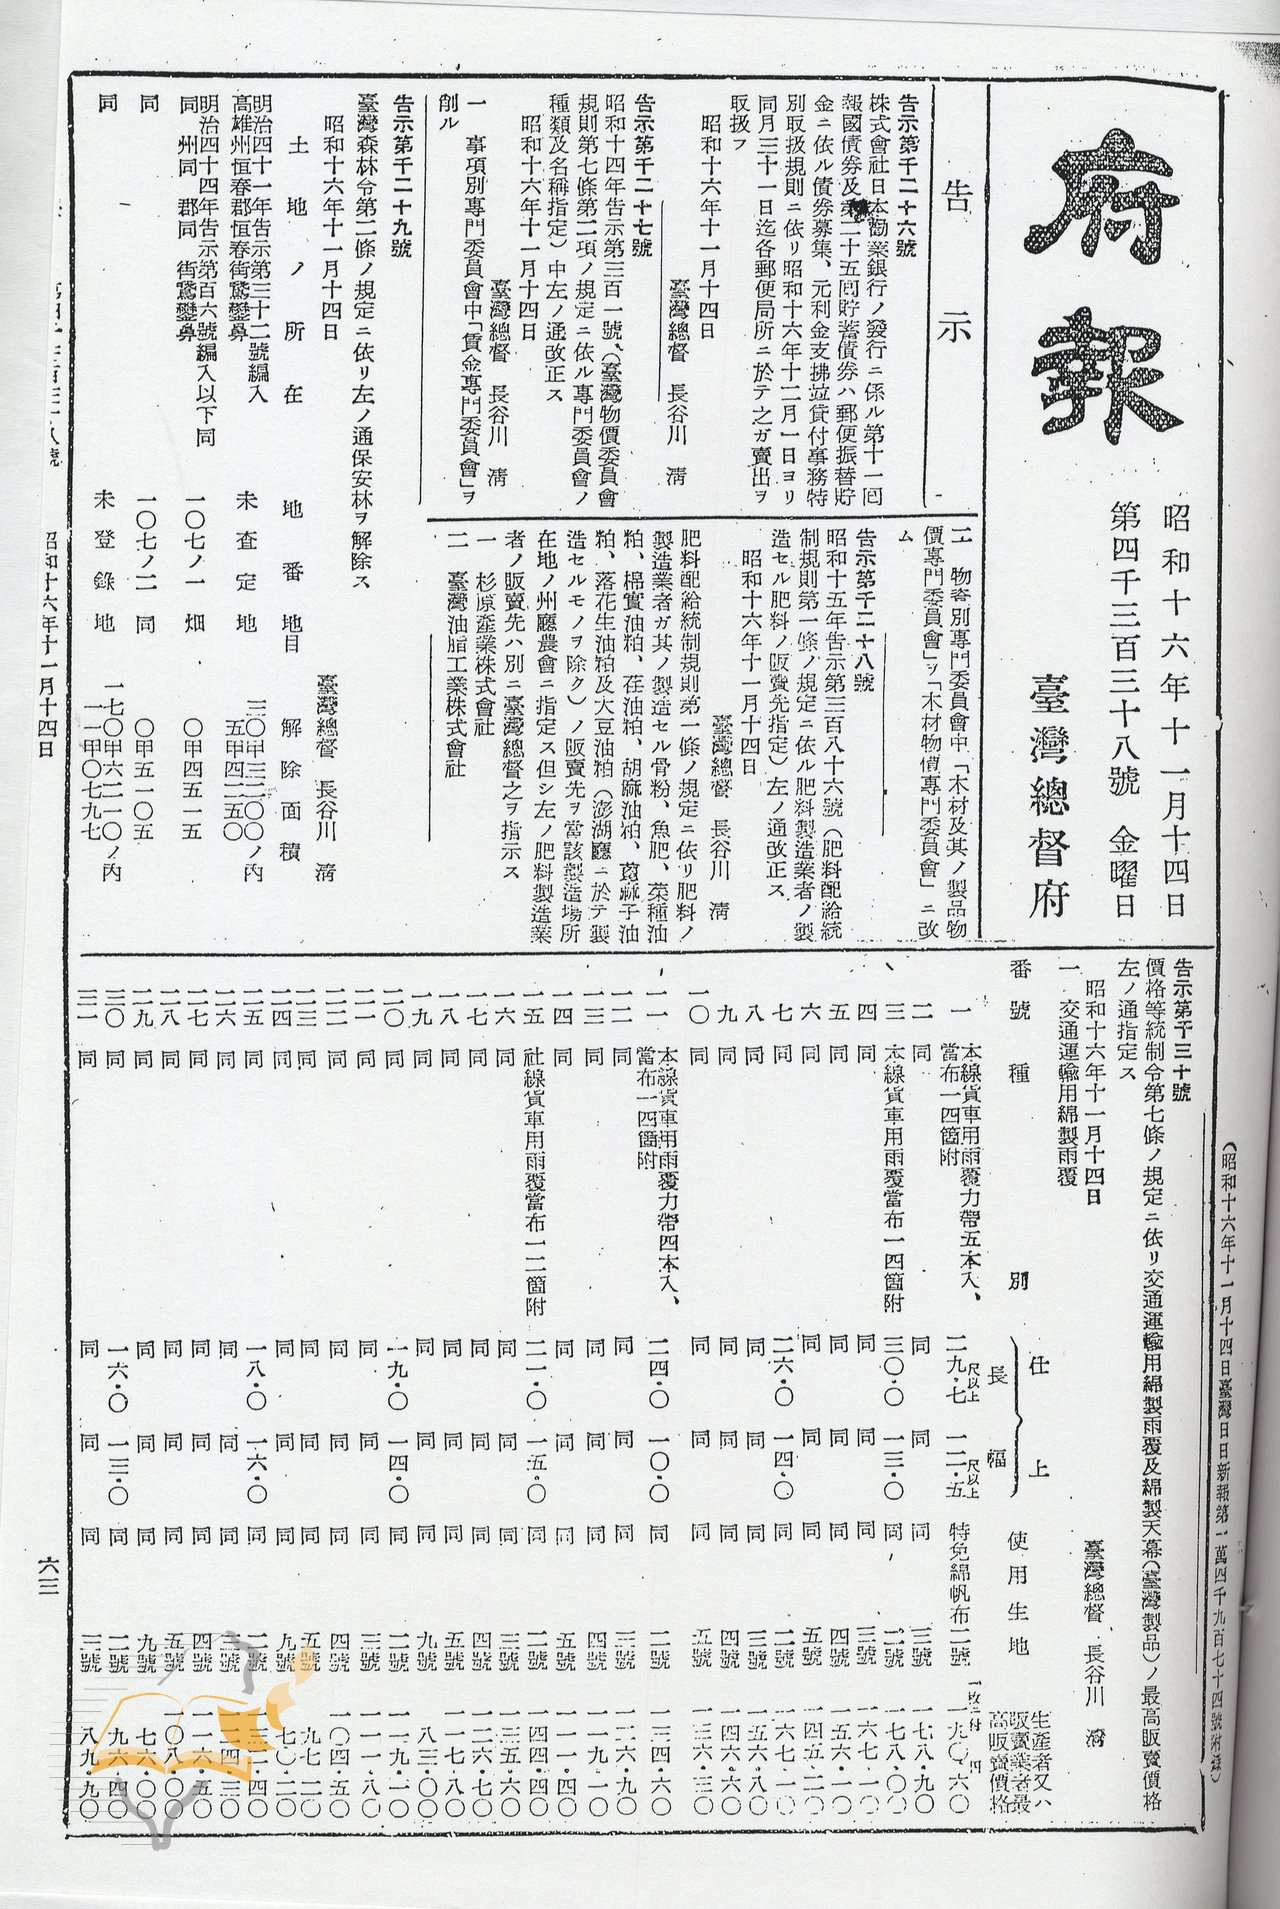 圖1：《臺灣總督府報》，第4338號，昭和16（1941）年11月14日，頁63。